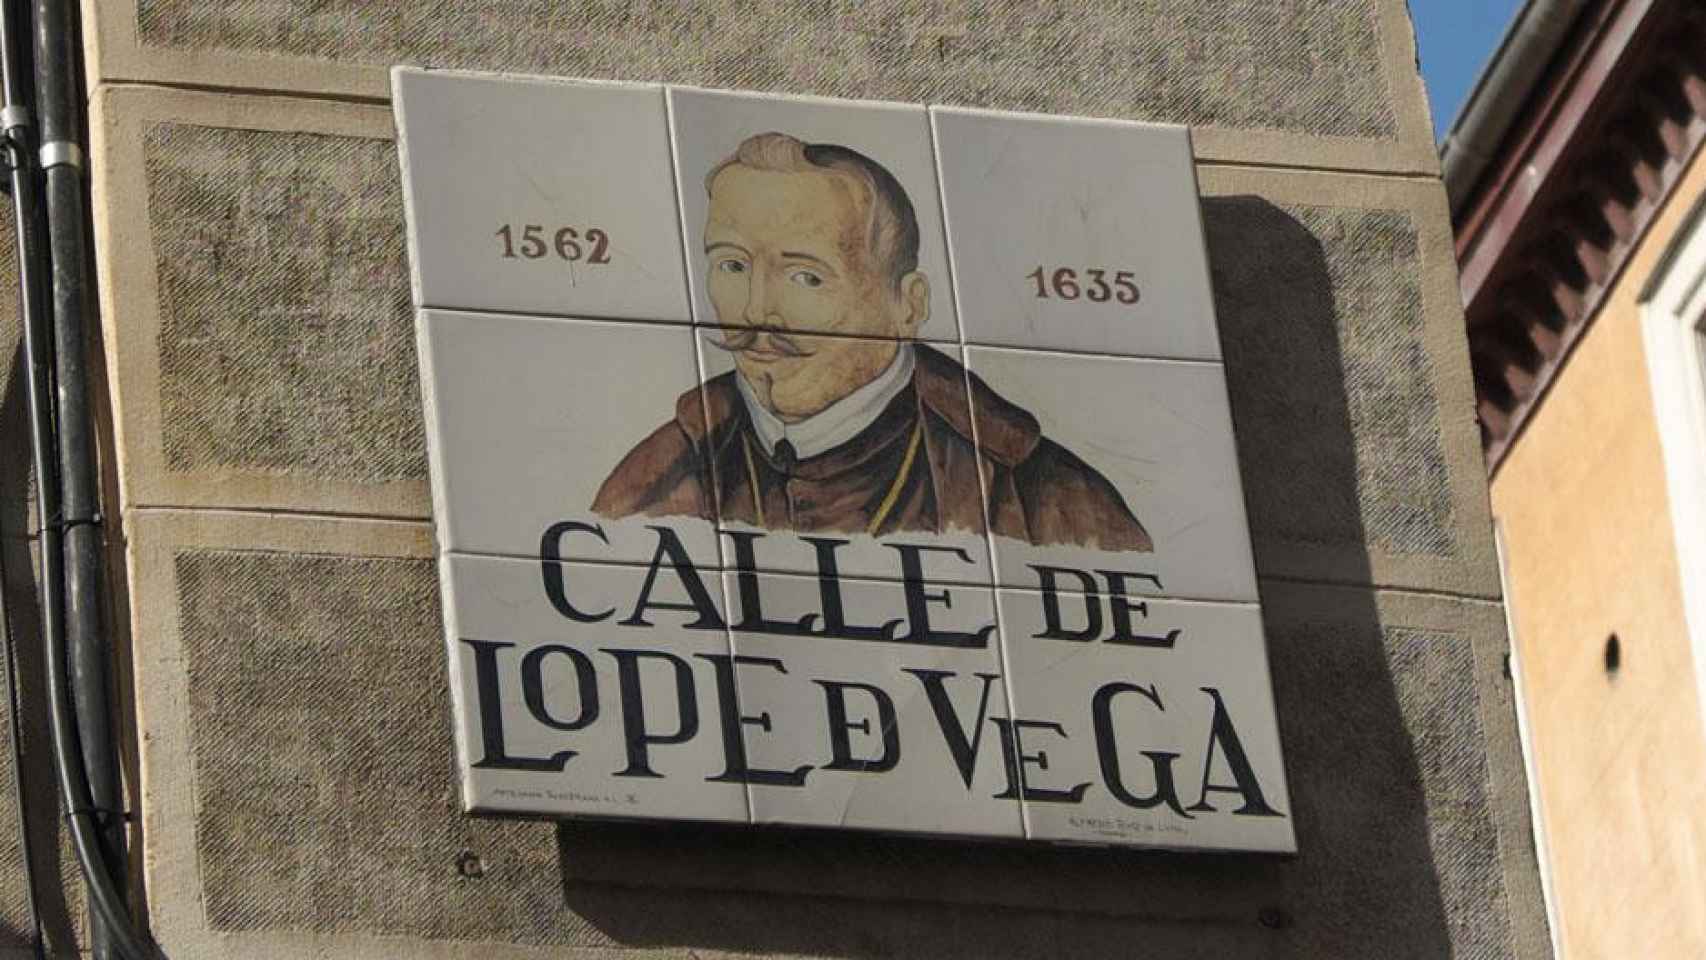 Calle Lope de Vega en el Barrio de las Letras de Madrid, un lugar para los amantes de la literatura / GFREIHALTER - WIKIMEDIA COMMONS